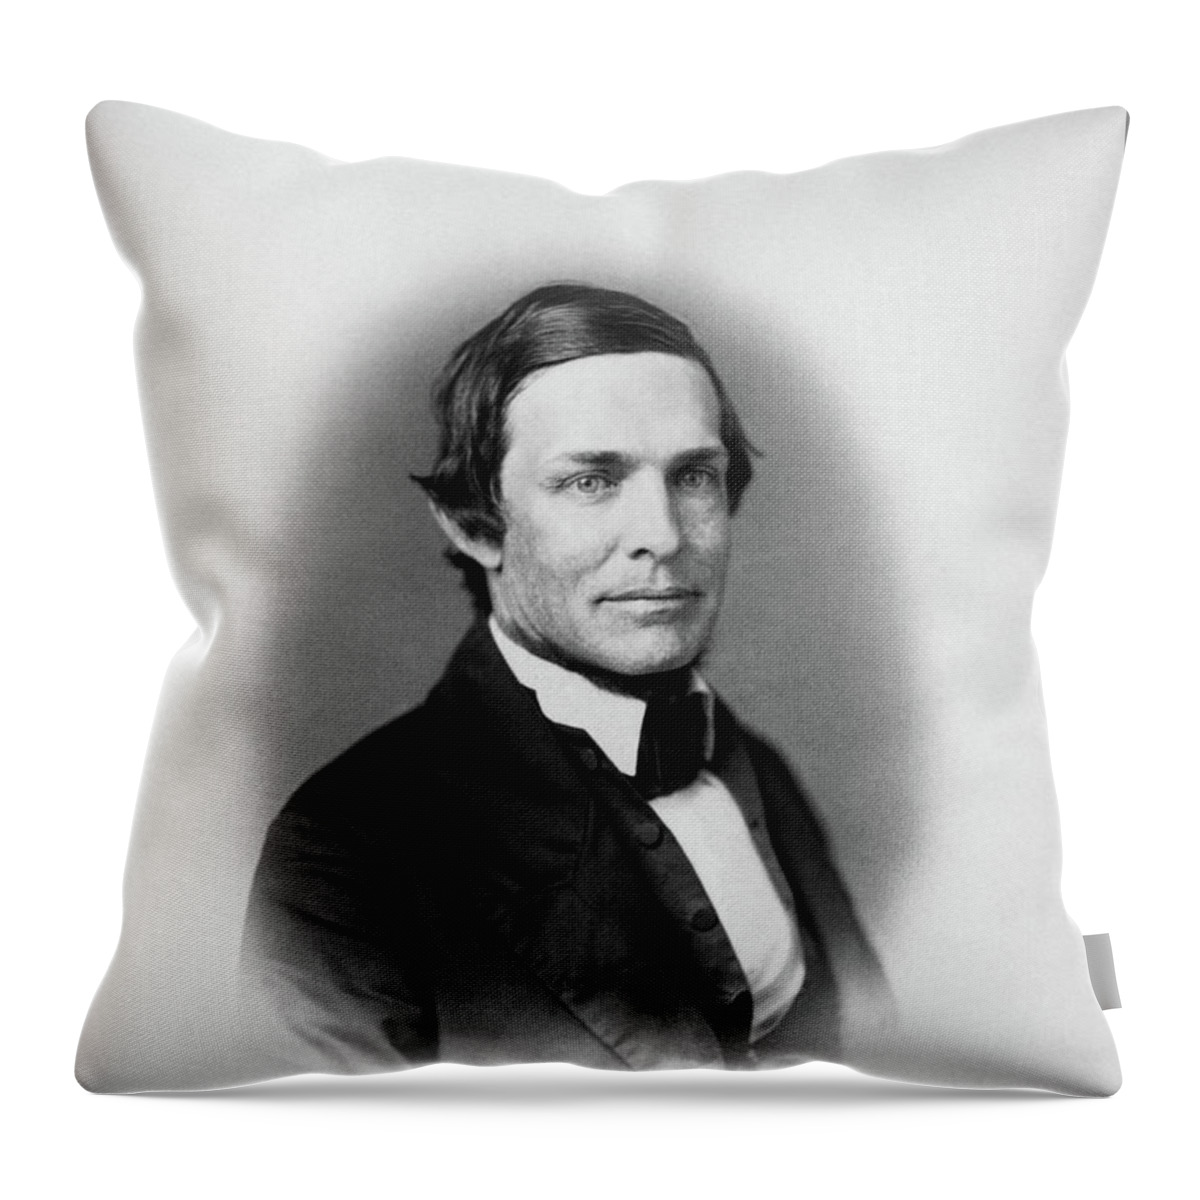 Schuyler Colfax Throw Pillow featuring the photograph Schuyler Colfax Portrait - 1859 by War Is Hell Store